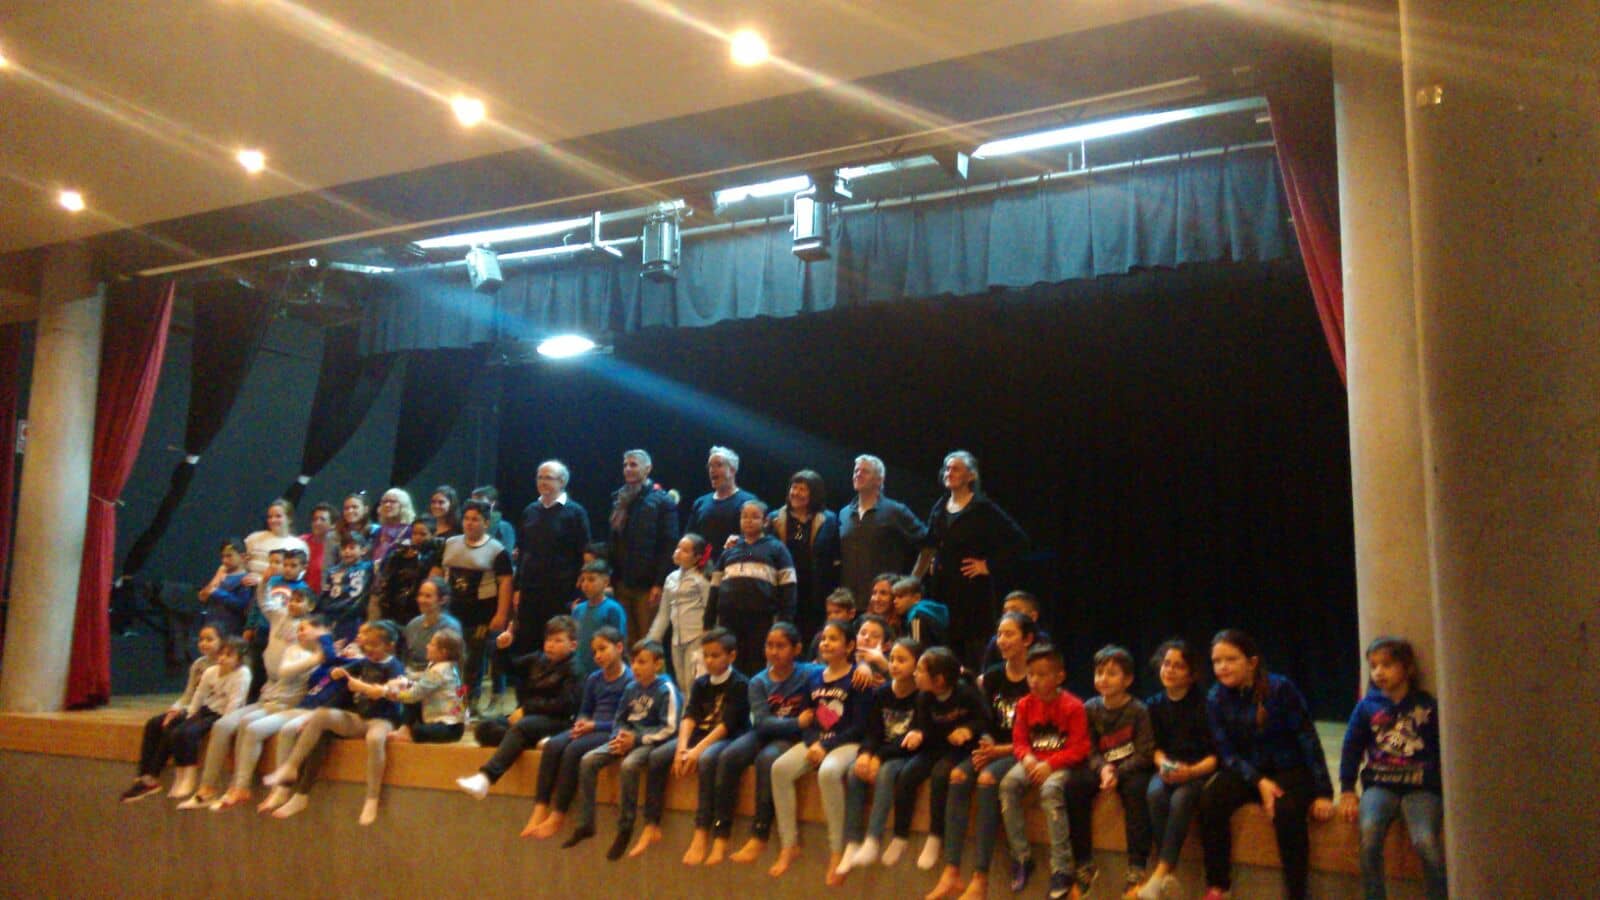 Danza y teatro comunitario en el colegio Santa Teresa